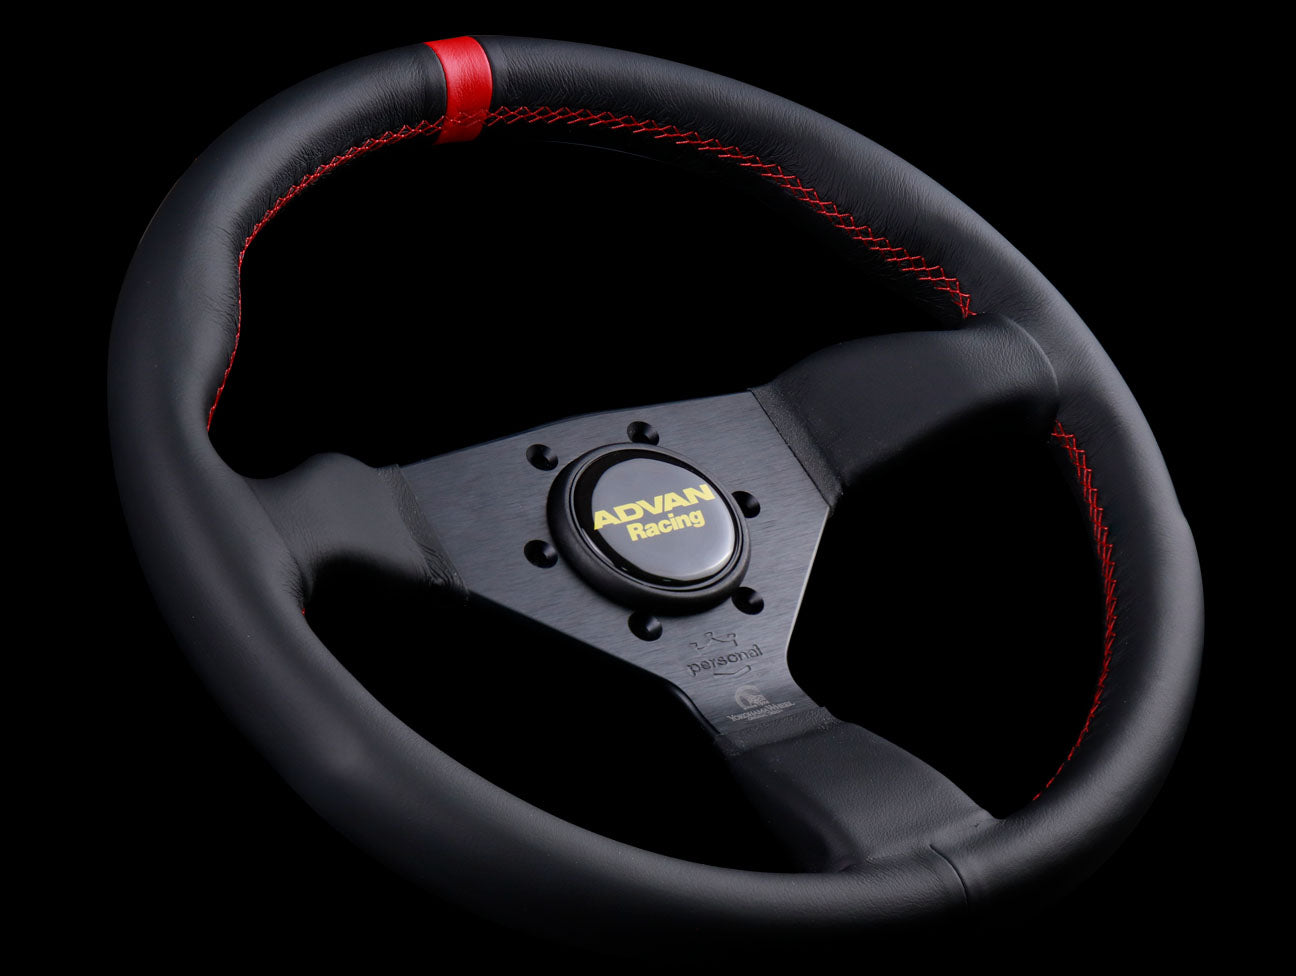 Advan x Personal Steering Wheel Steering Wheel